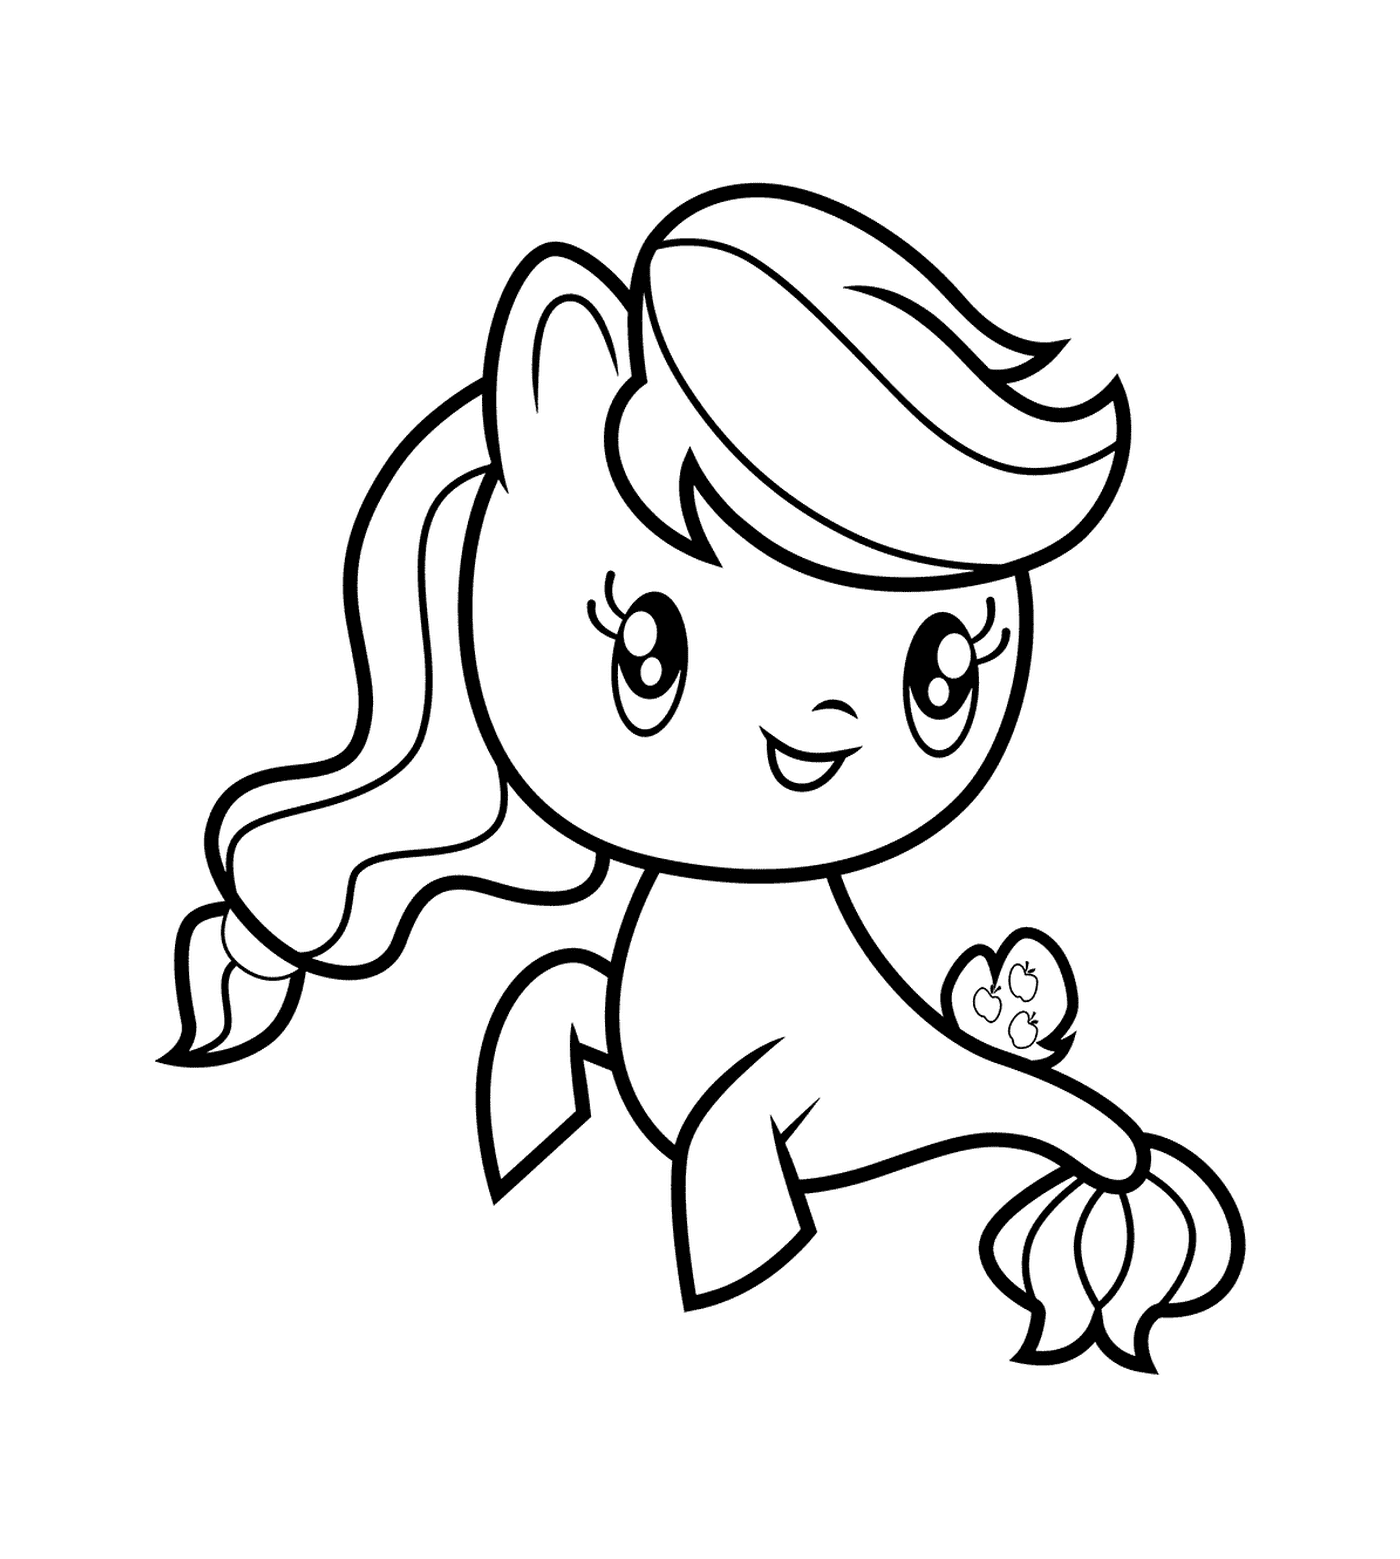  Applejack Pony of Sea de la colección Cutie Mark 